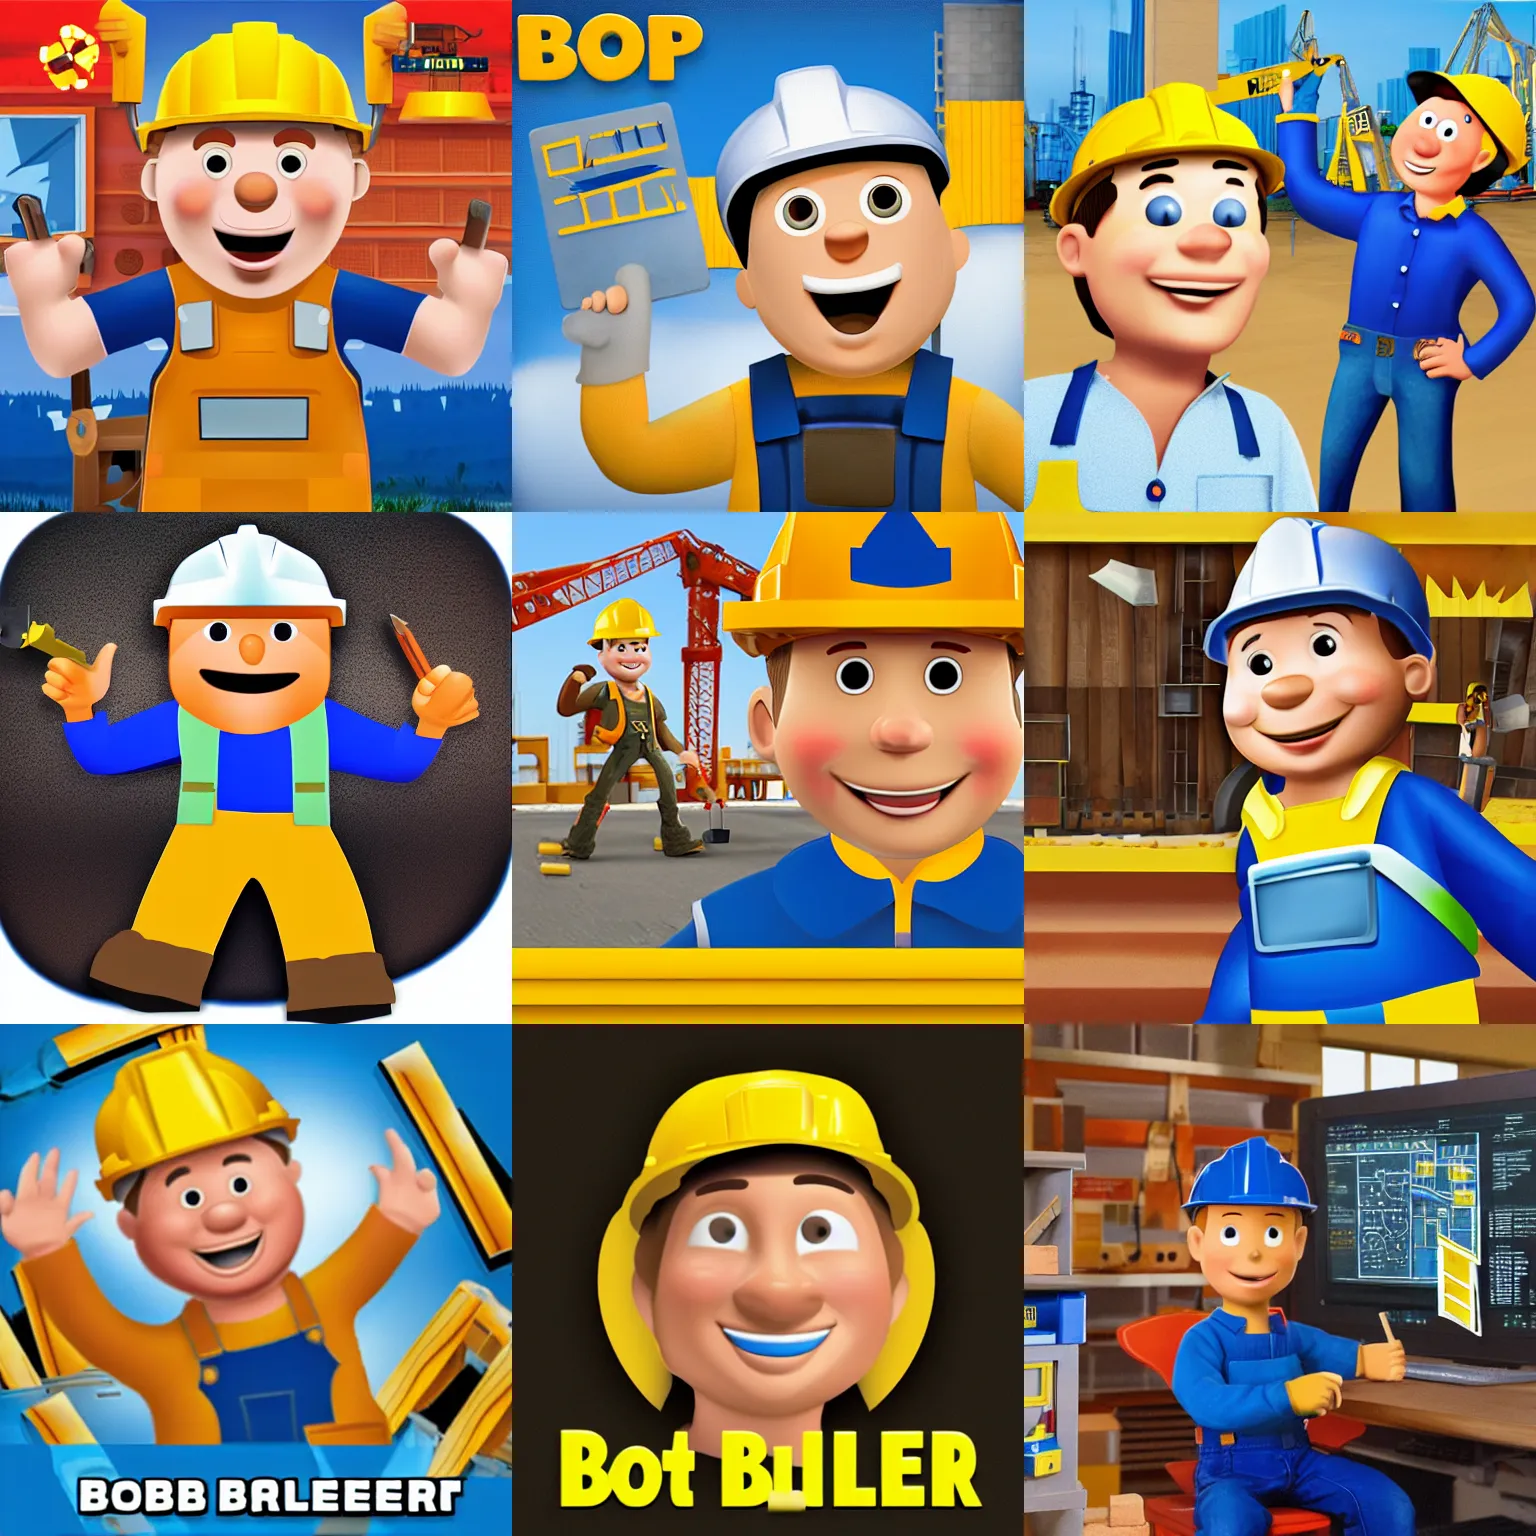 Prompt: bob the builder software developer